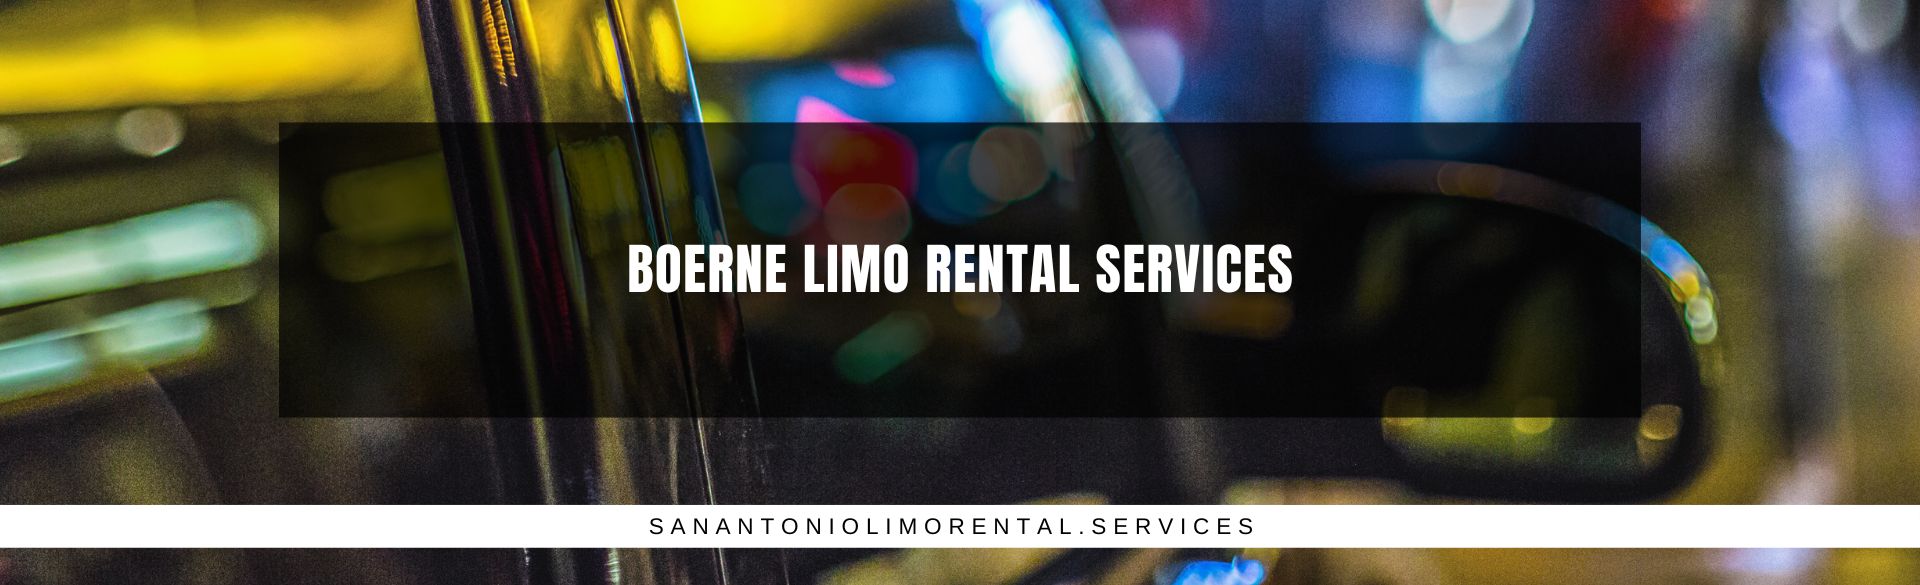 Boerne Limo Rental Services